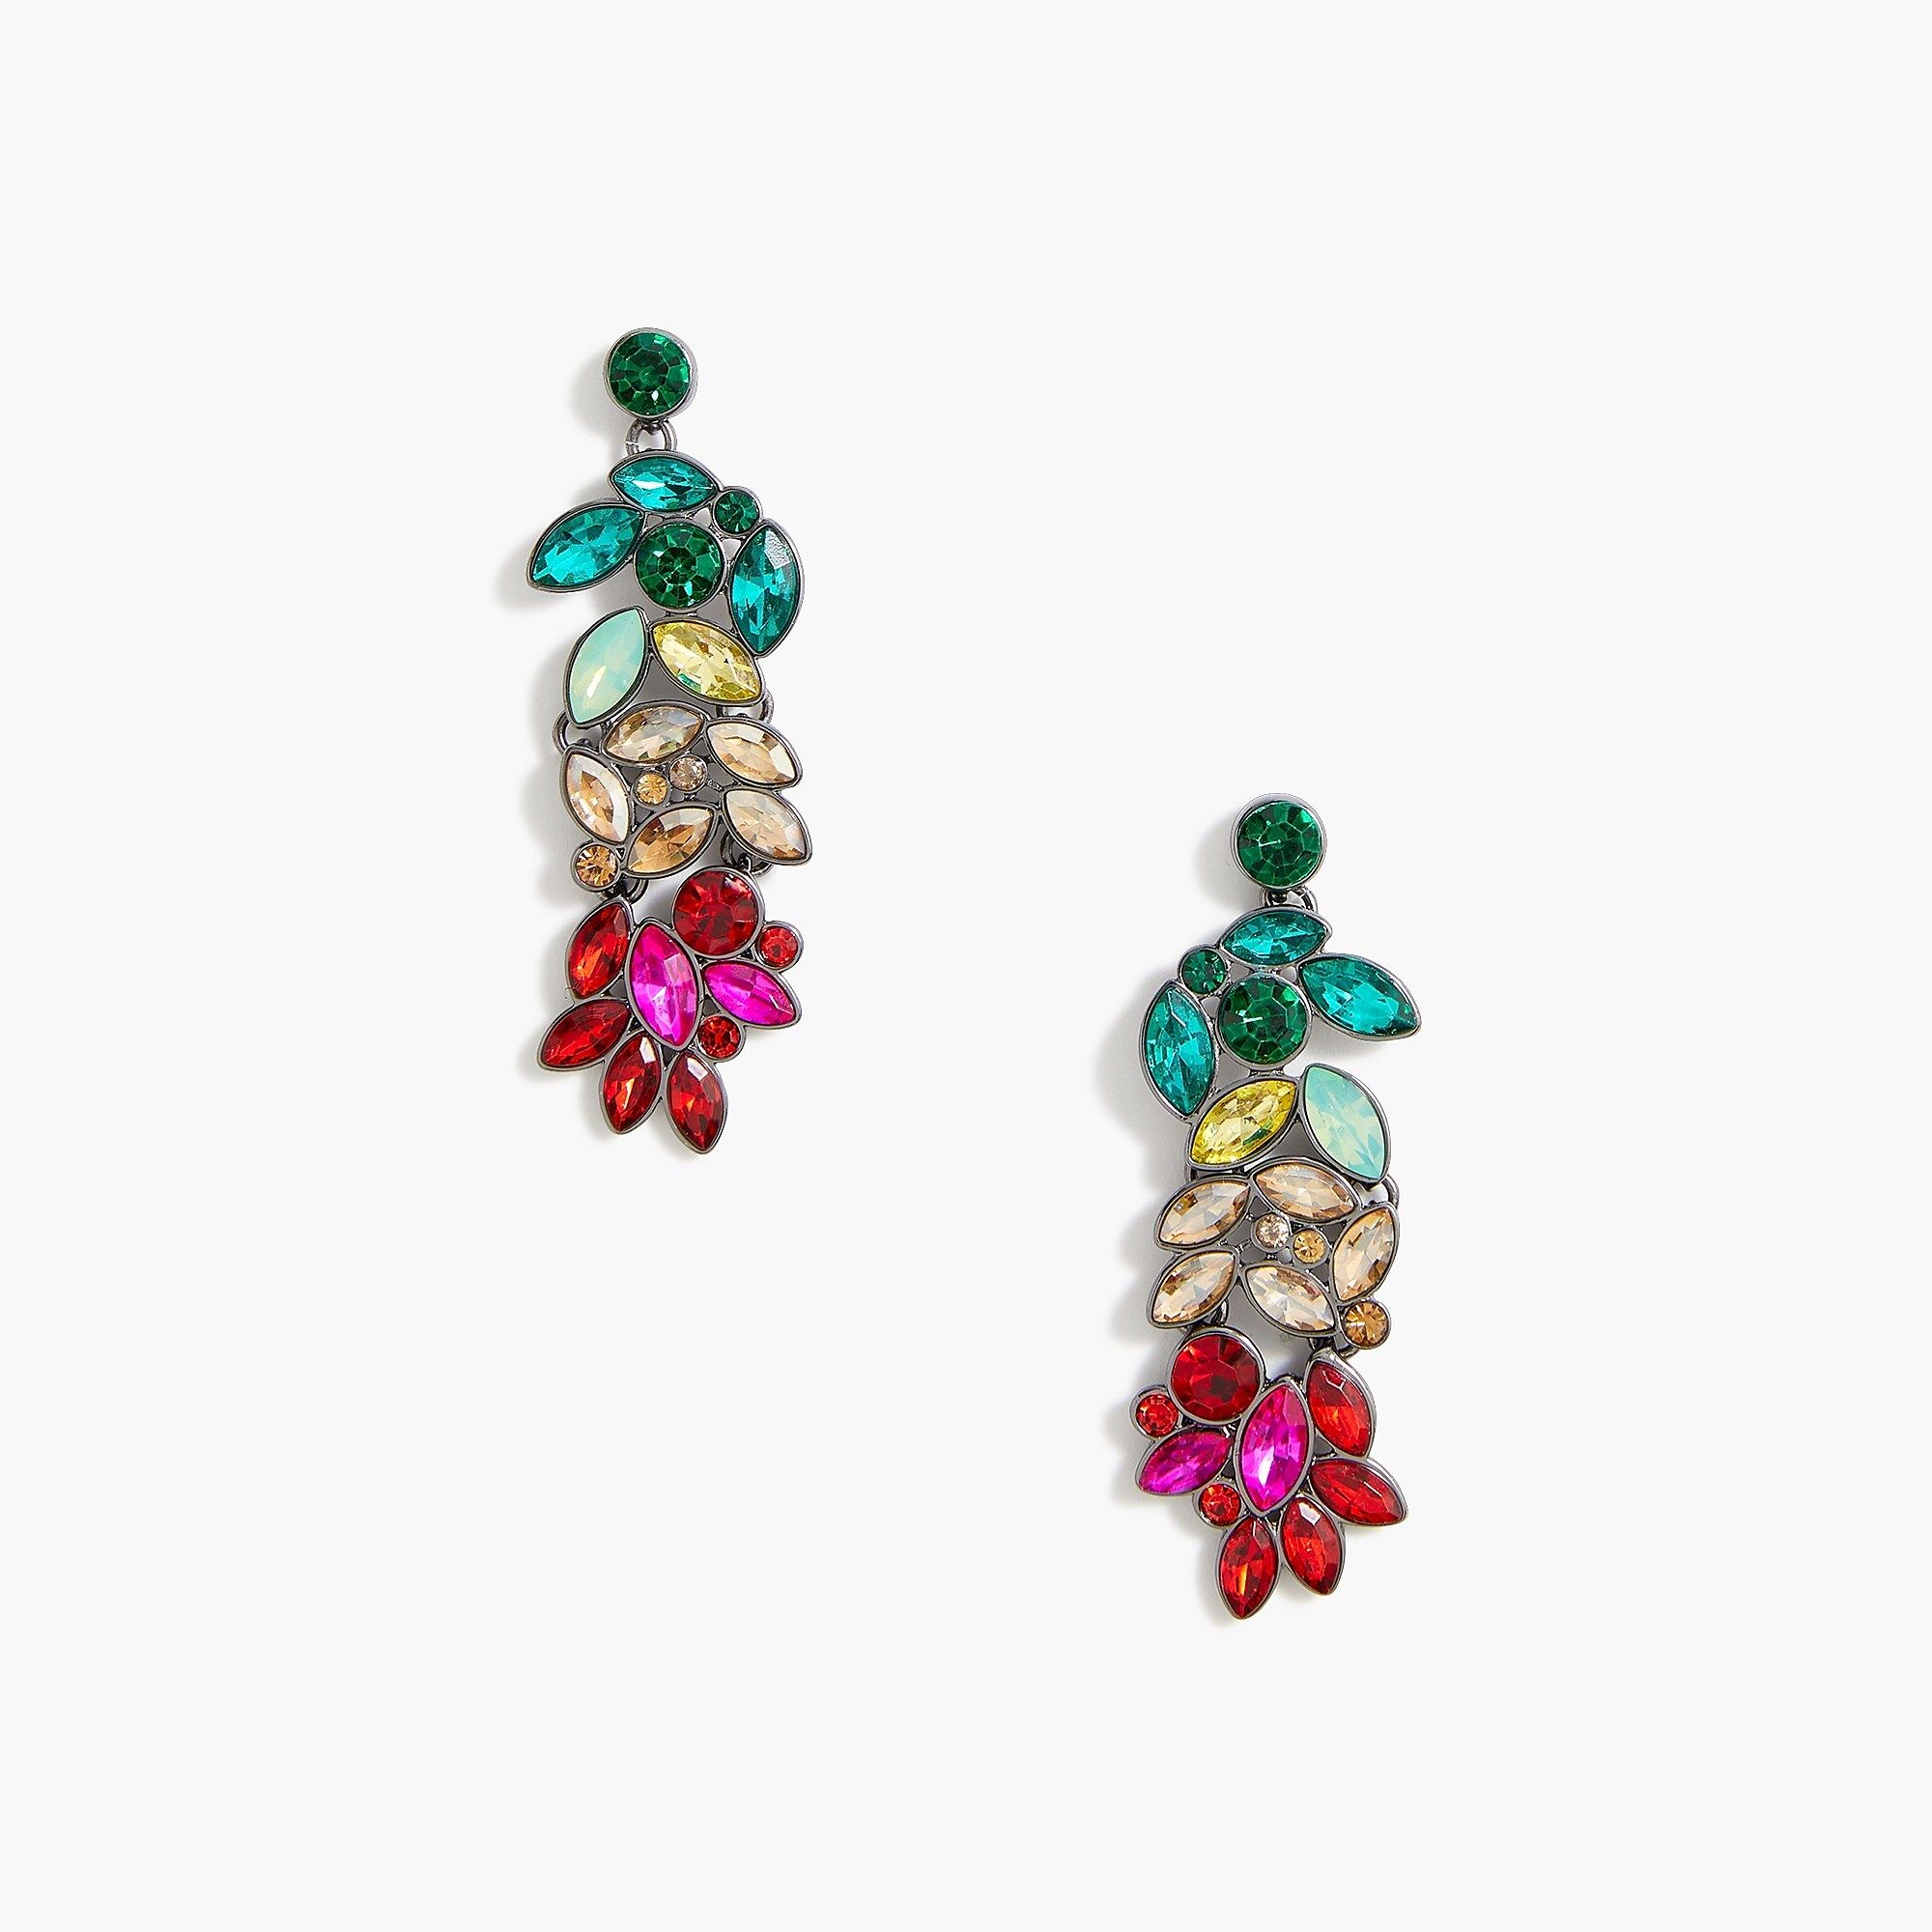 Crystal leaf drop earrings | J.Crew Factory